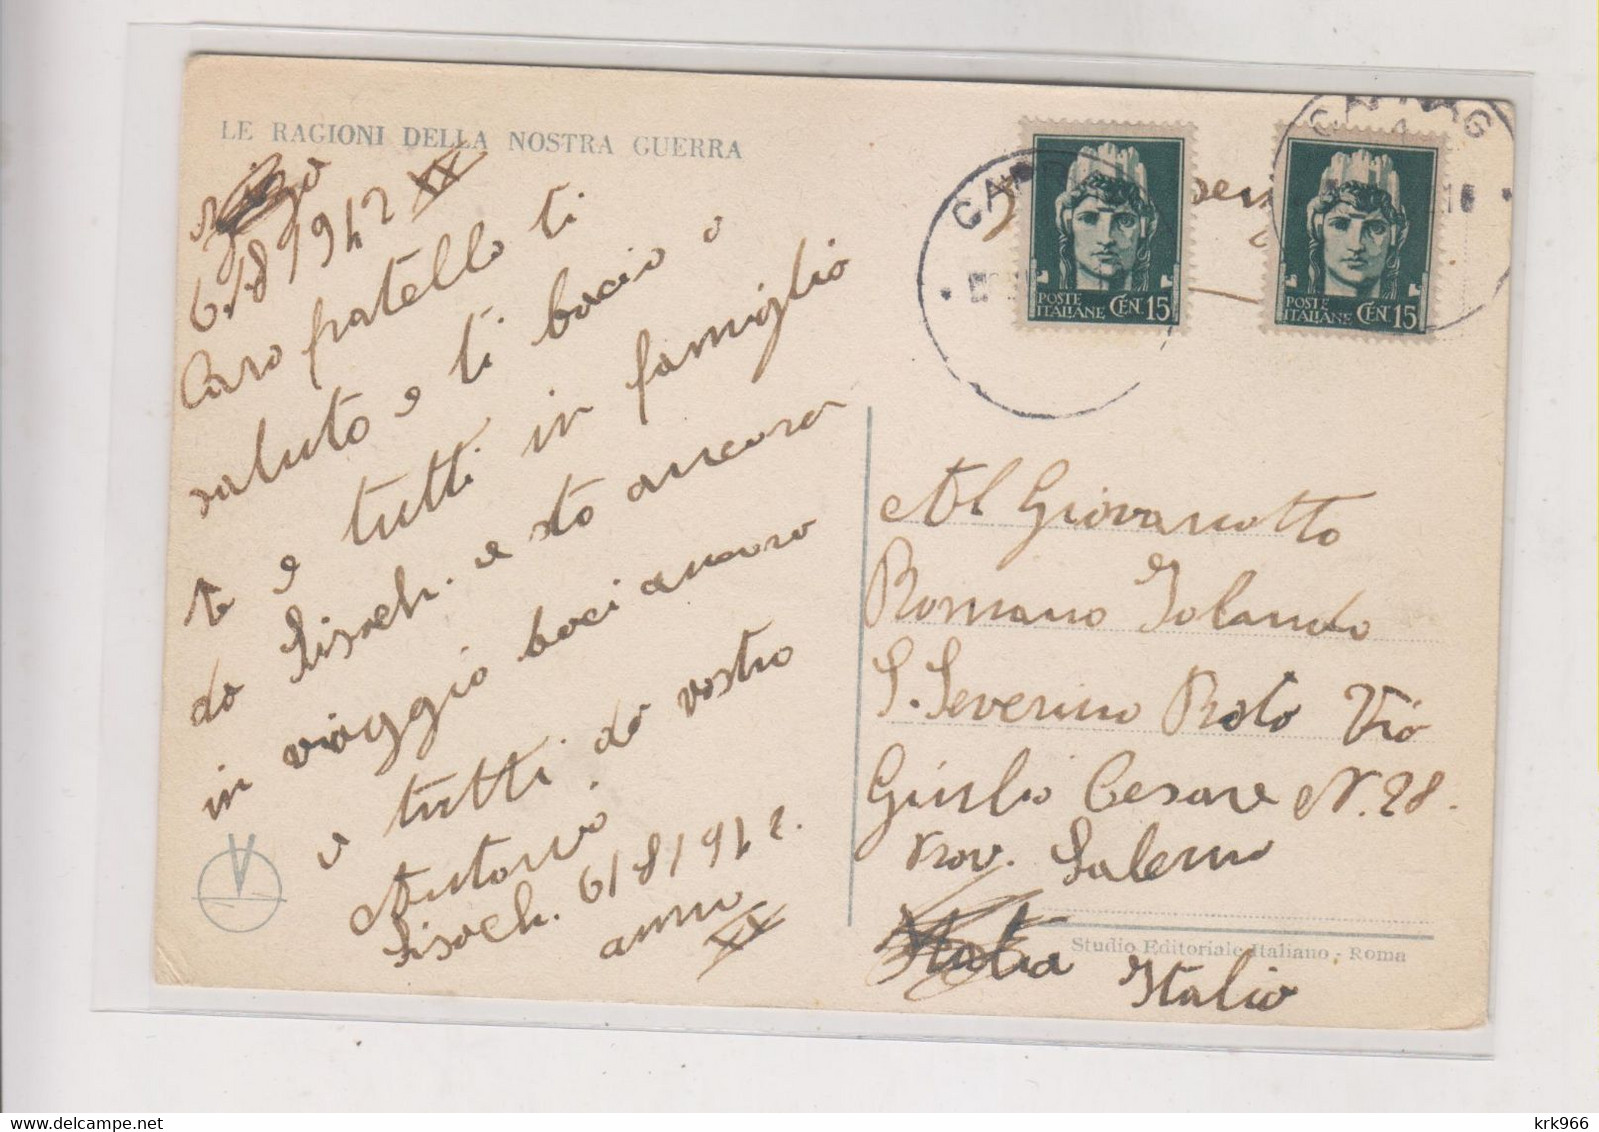 ITALY WW II WAR PROPAGANDA Postcard - Propagande De Guerre